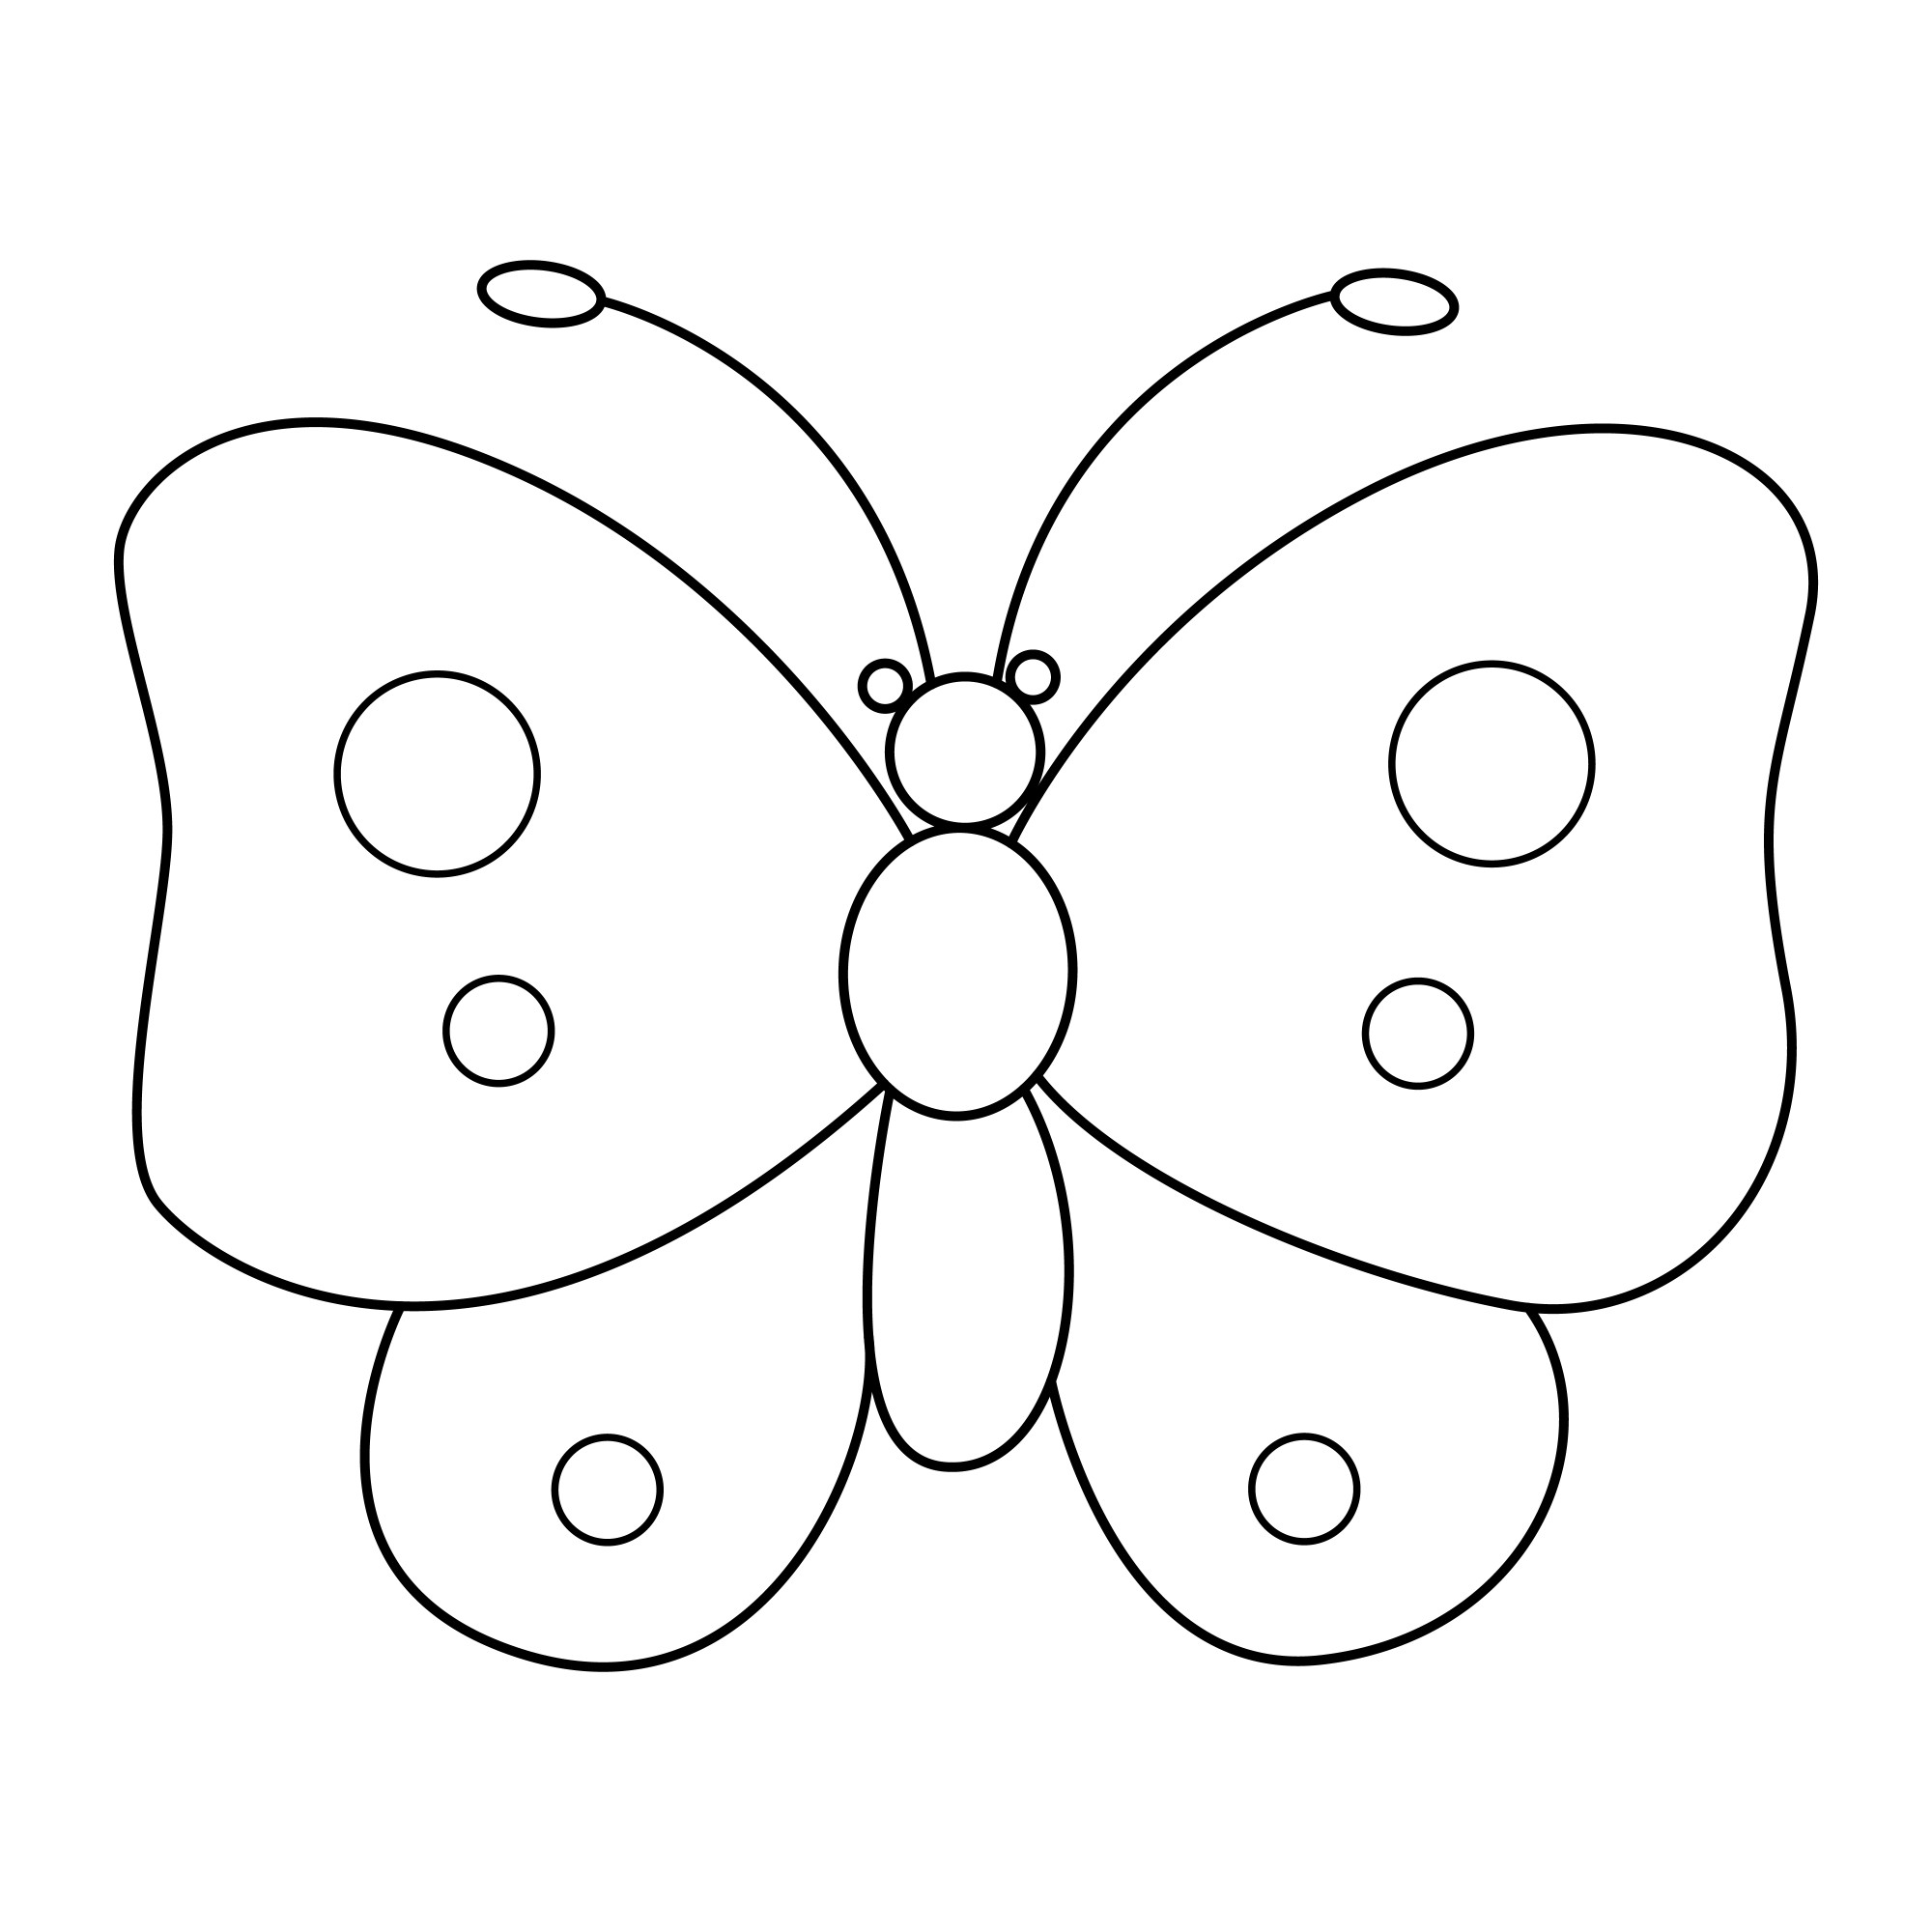 Раскраска для детей: легкая маленькая бабочка